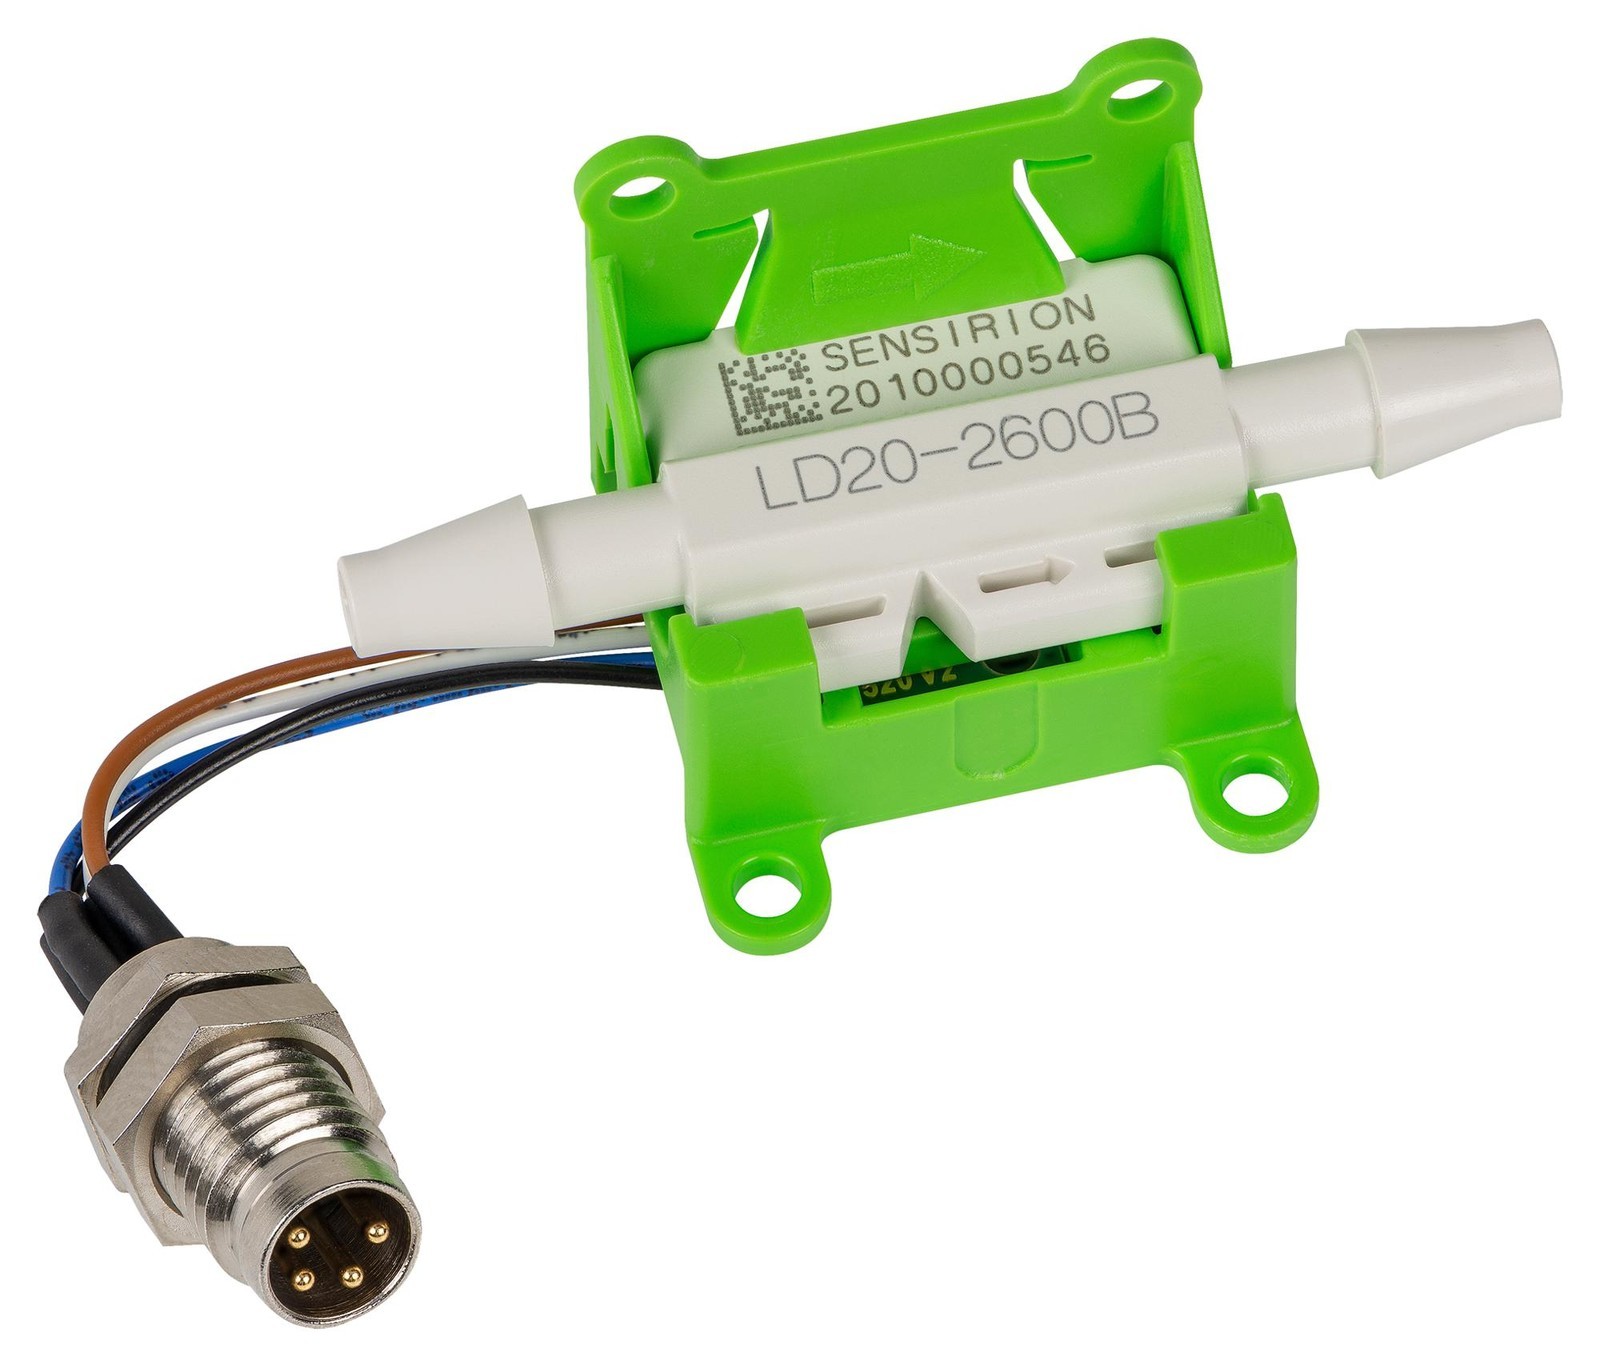 Sensirion Sek-Ld20-2600B Eval Kit, Liquid Flow Sensor